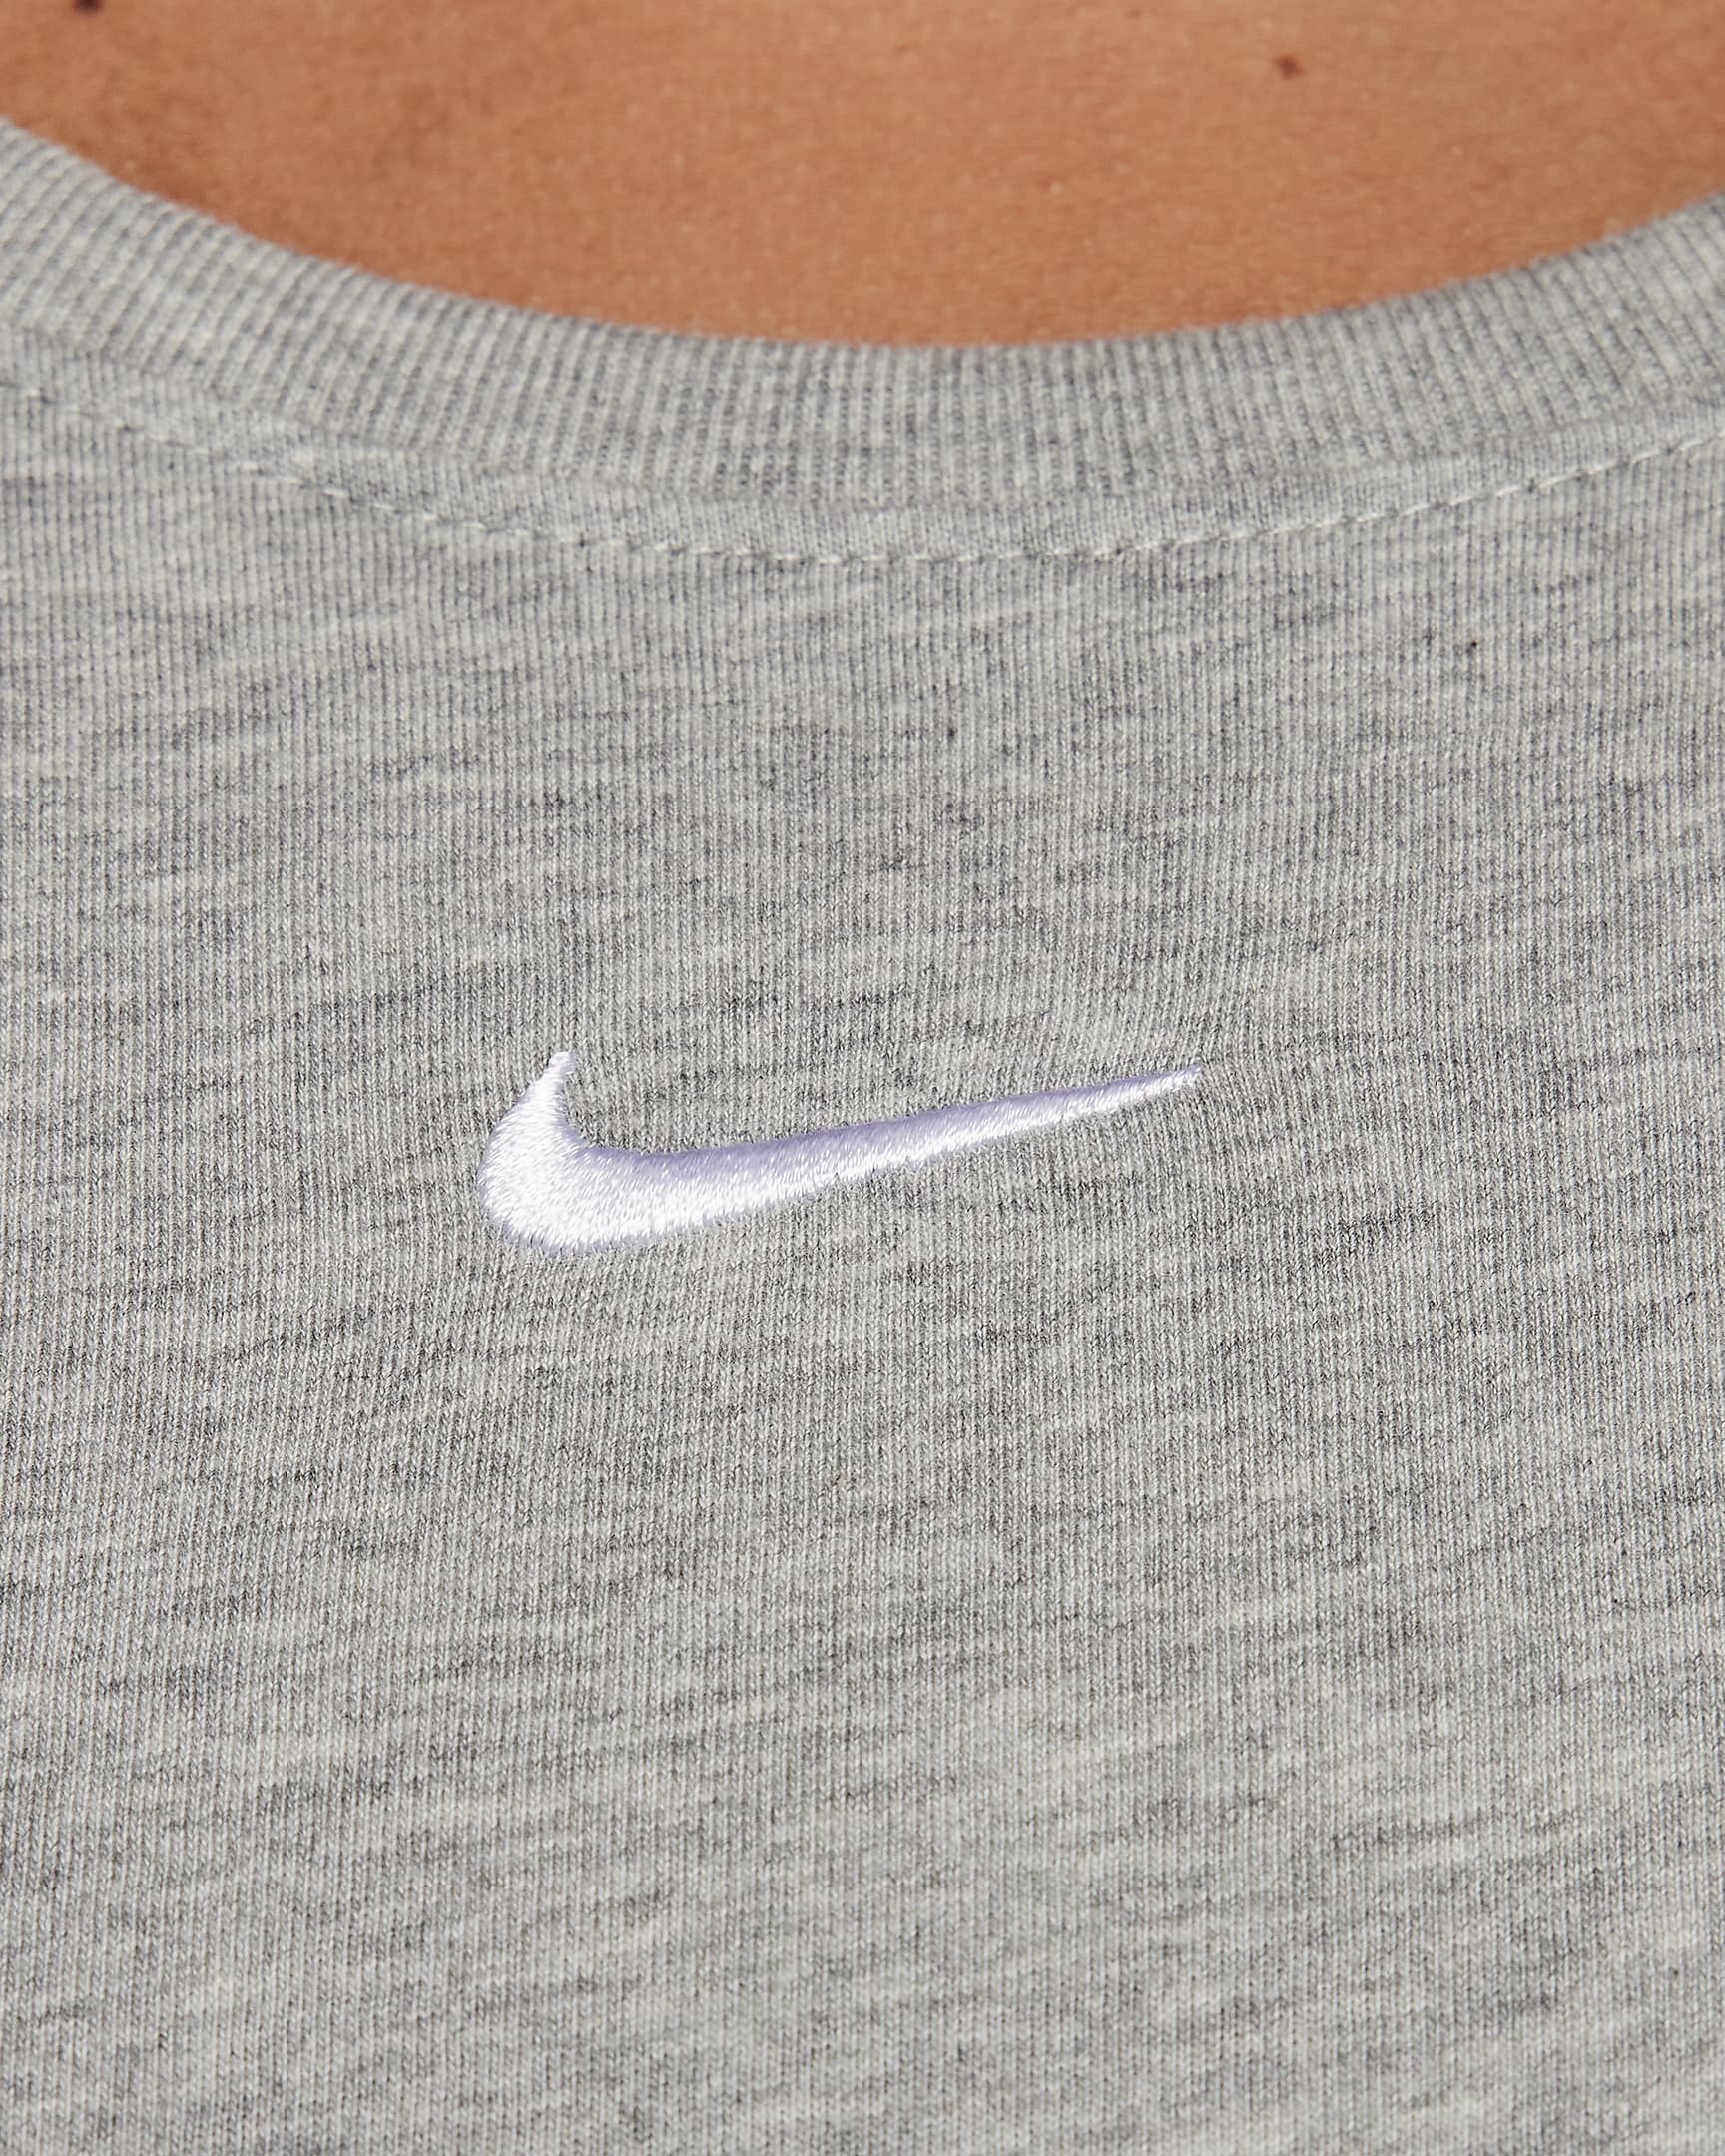 Playera de manga larga para mujer (talla grande) Nike Sportswear. Nike.com